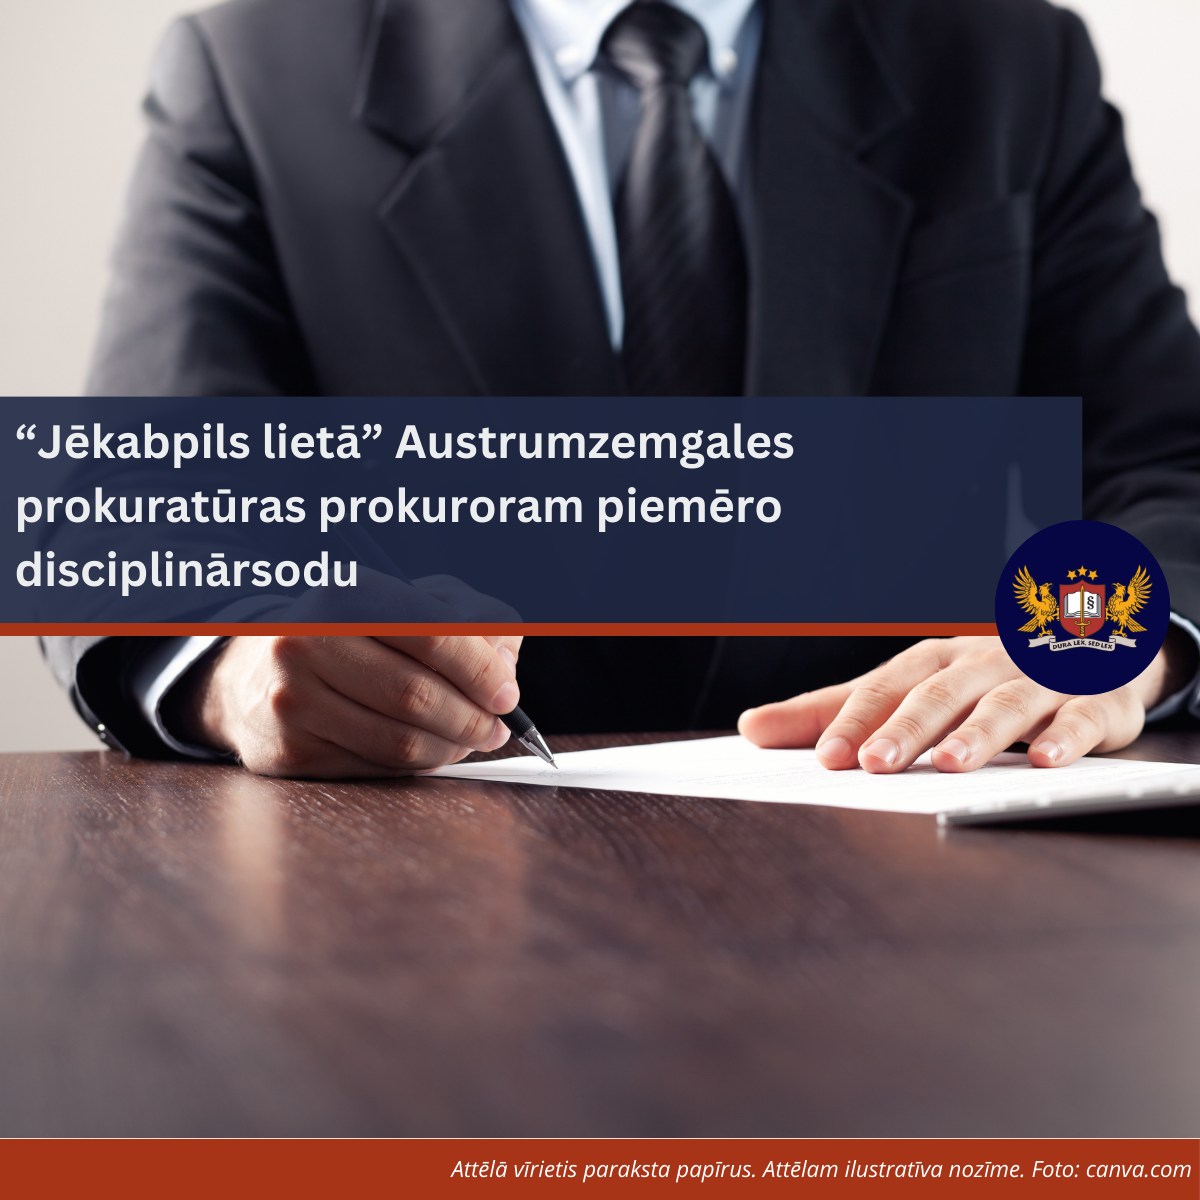 “Jēkabpils lietā” Austrumzemgales prokuratūras prokuroram piemēro disciplinārsodu